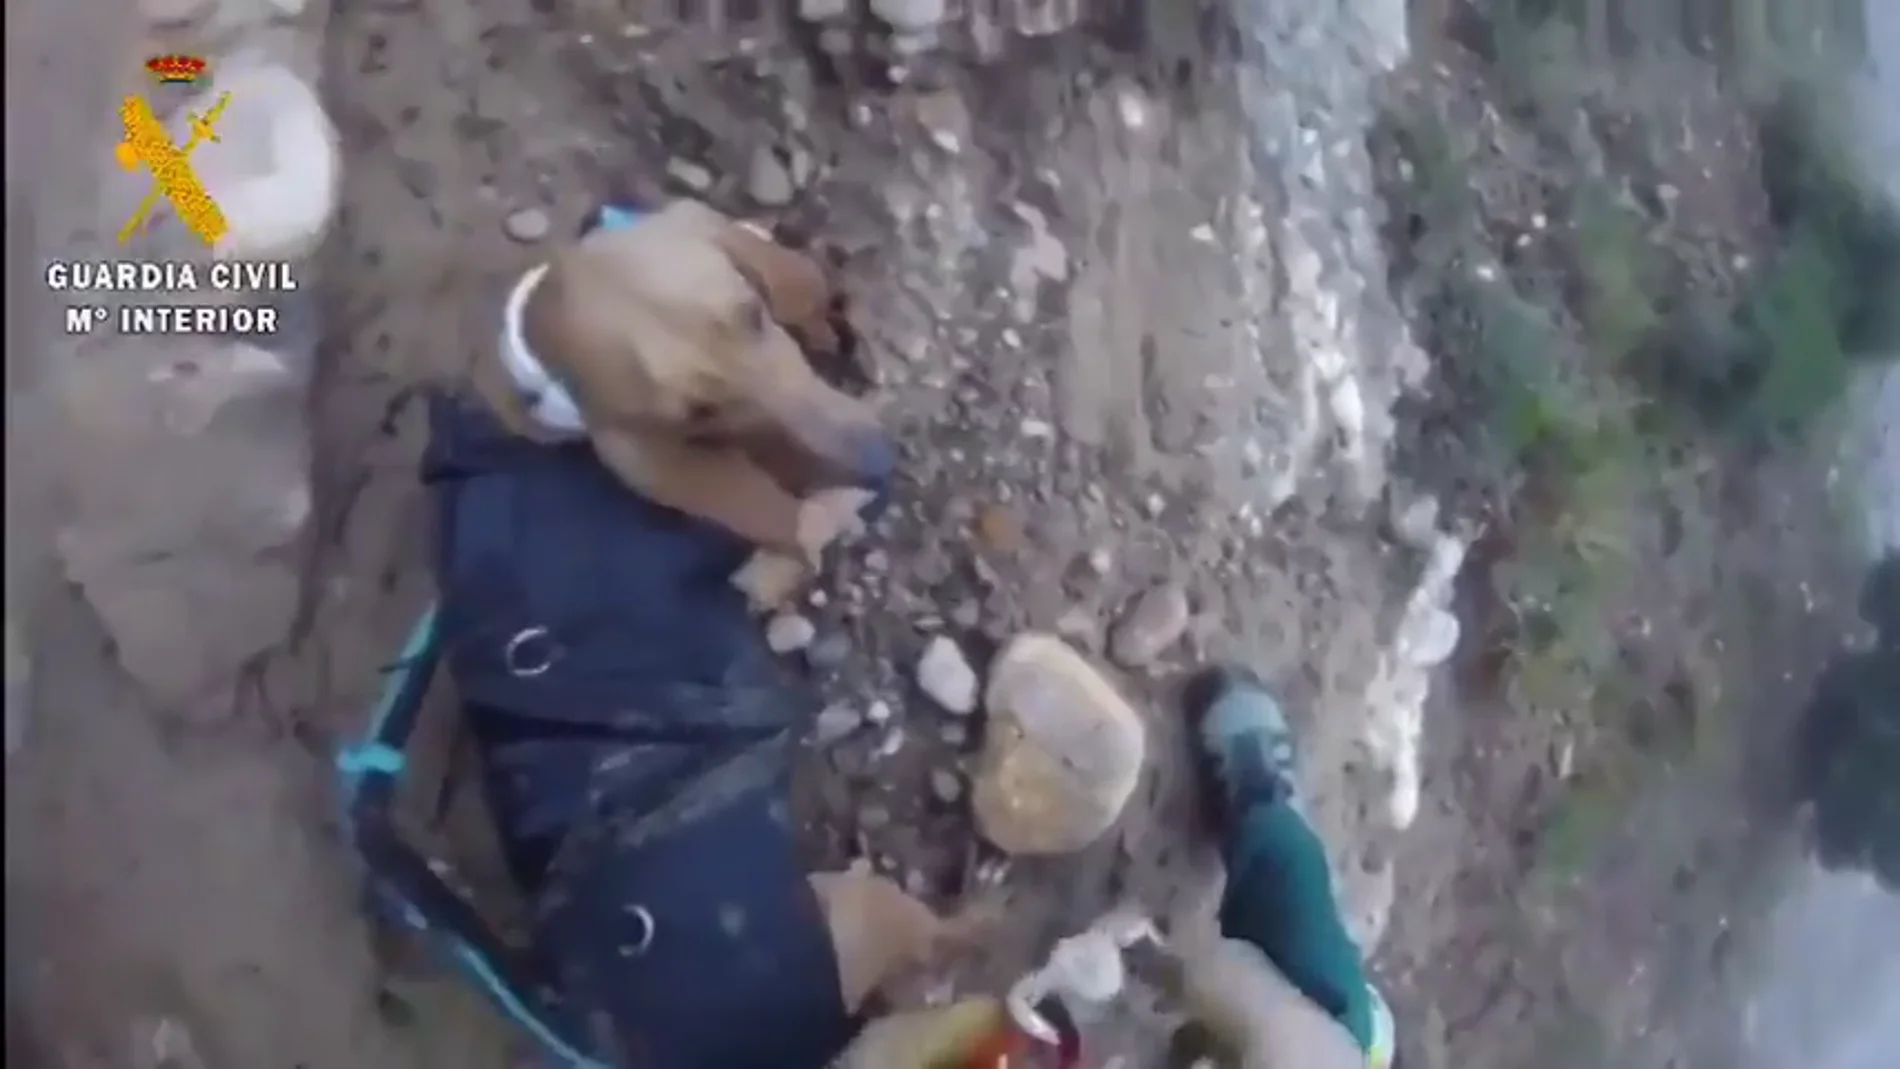 El impresionante rescate de la Guardia Civil de un perro que llevaba tres días atrapado en un barranco 